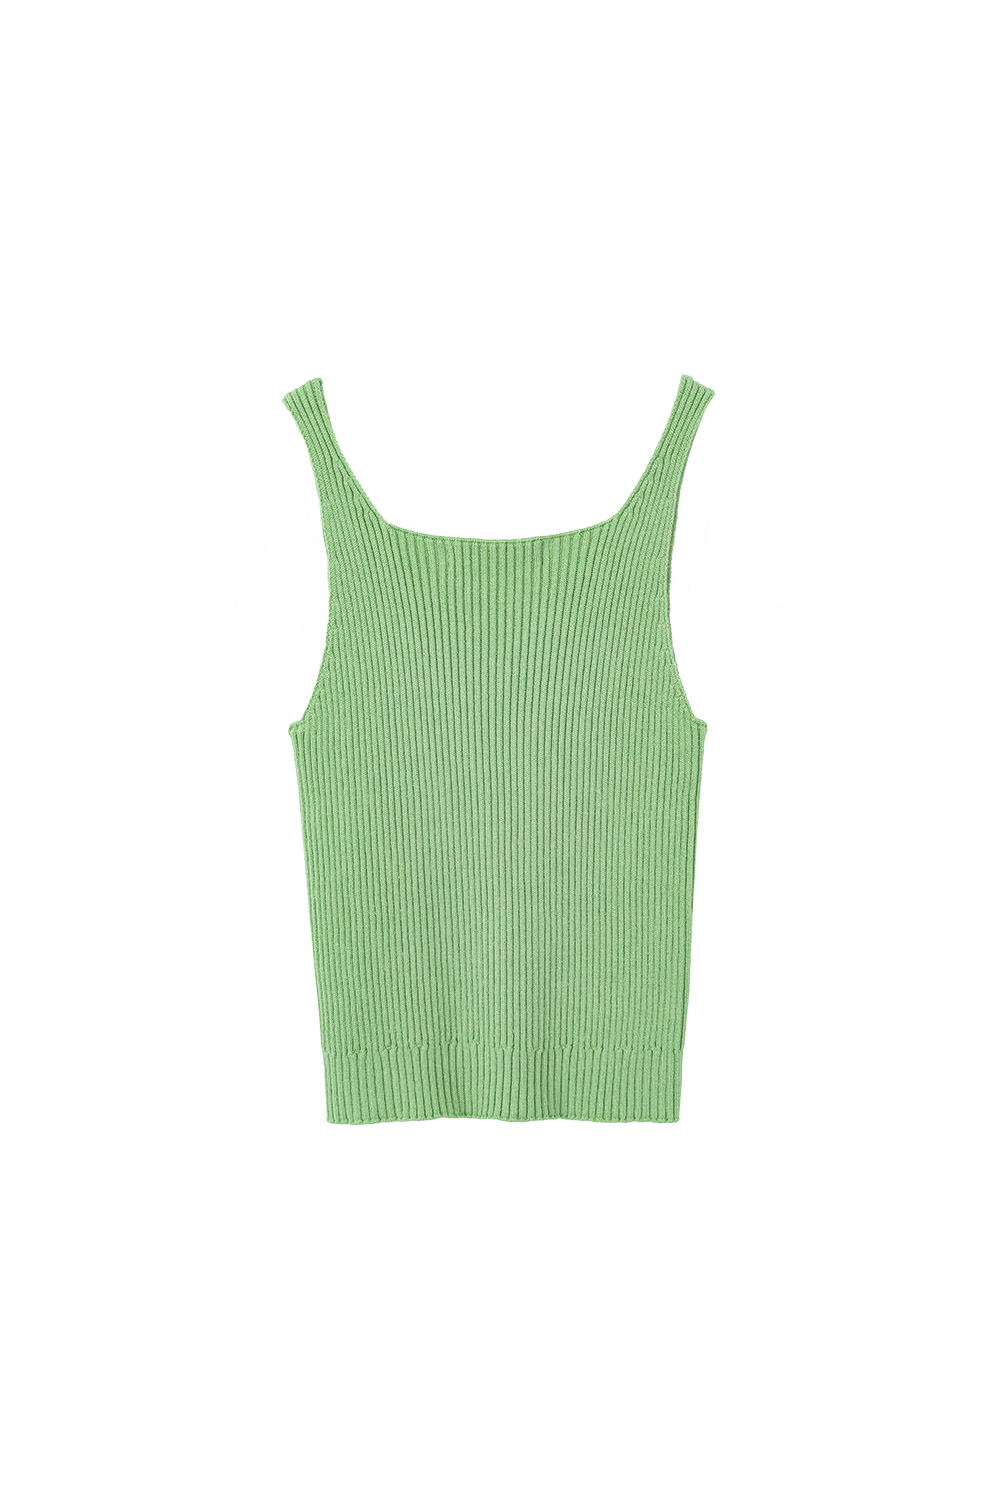 V-Neck Wholegarment Sleeveless Top (Light Green)